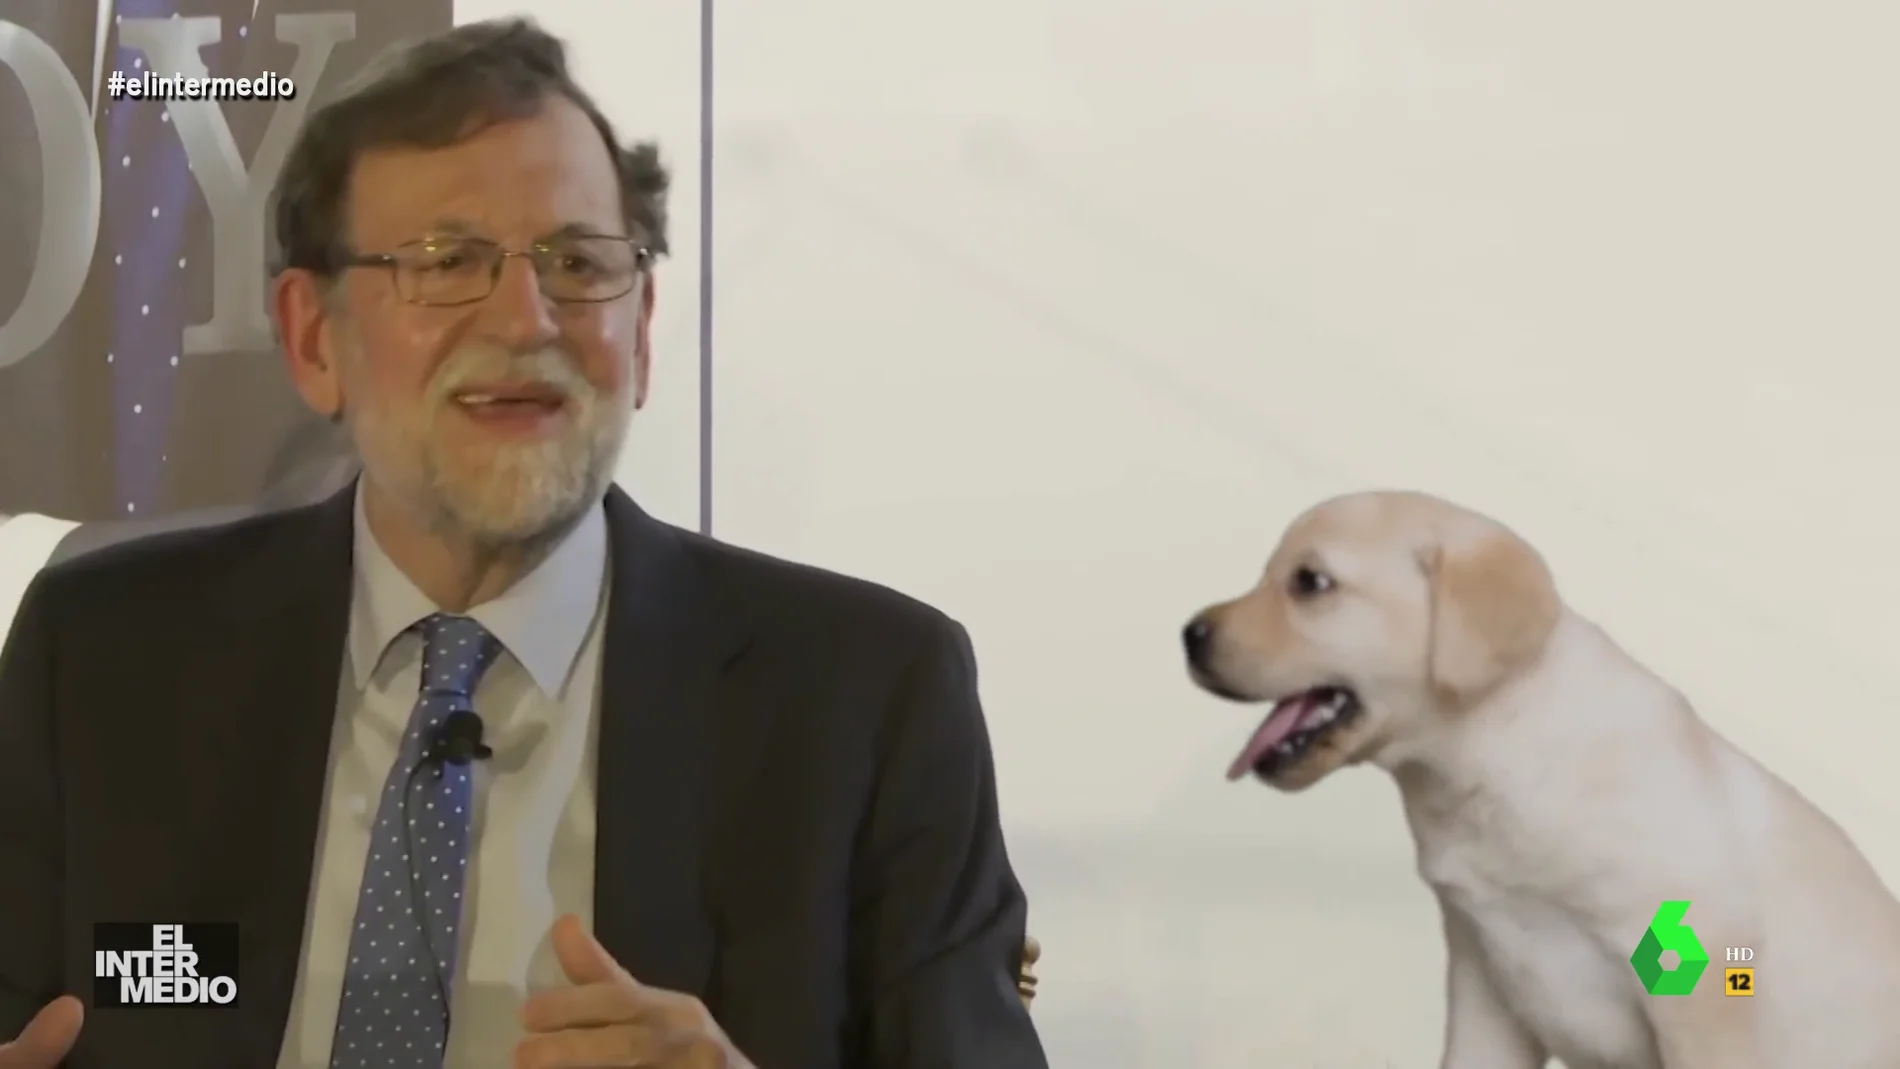 Vídeo manipulado - La sorprendente conversación de Mariano Rajoy con un cachorro: "Te diré algo más para que veas lo que mandamos tú y yo"